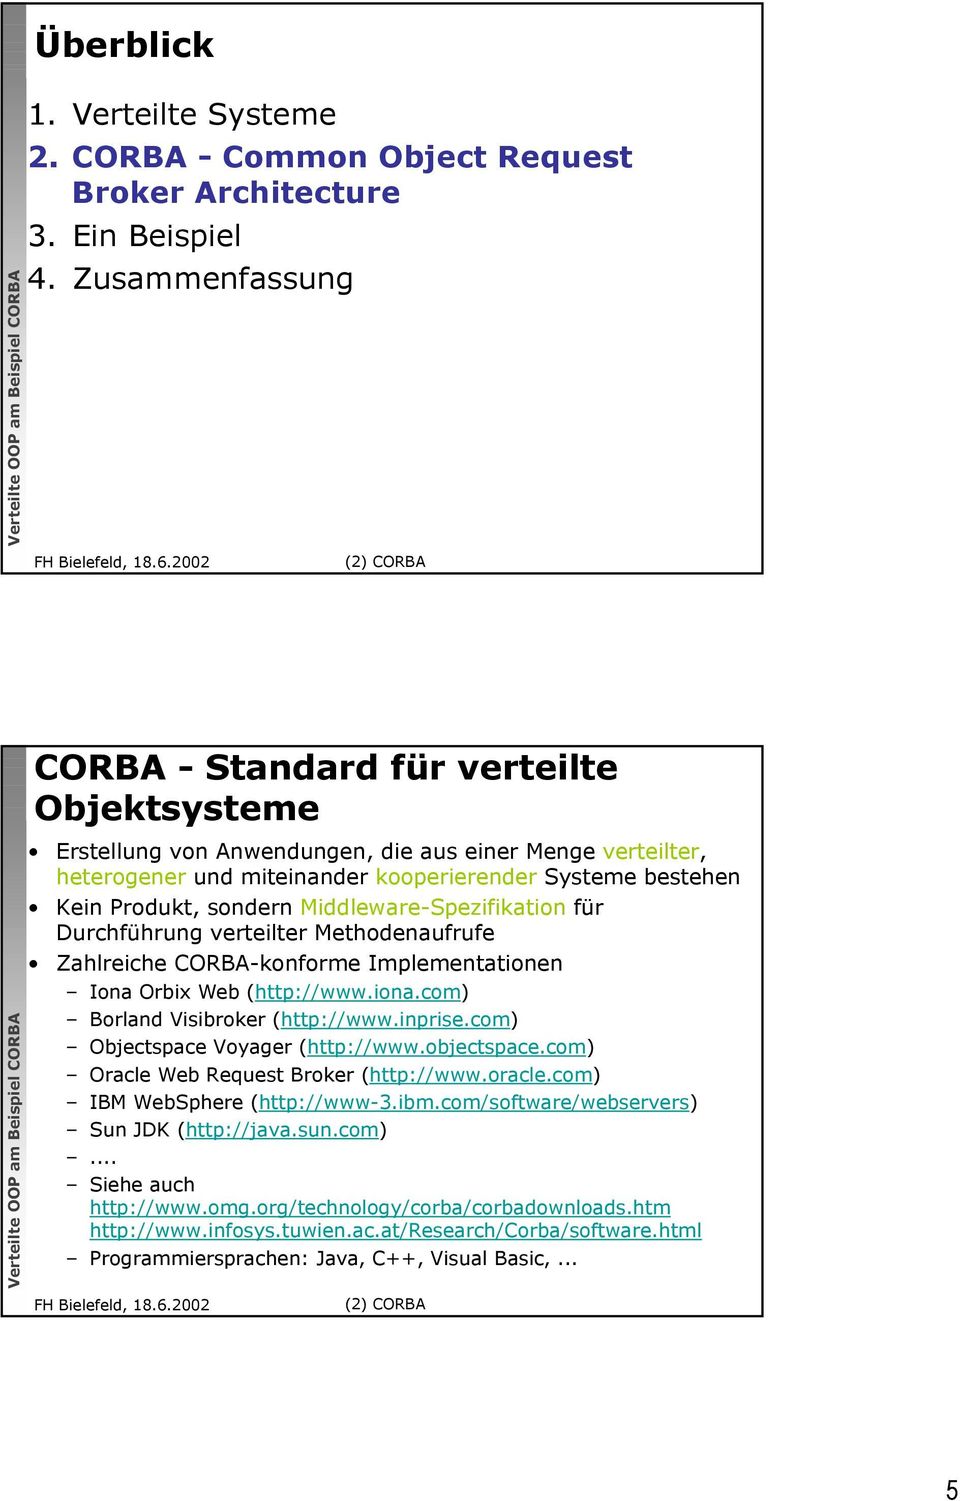 sondern Middleware-Spezifikation für Durchführung verteilter Methodenaufrufe Zahlreiche CORBA-konforme Implementationen Iona Orbix Web (http://www.iona.com) Borland Visibroker (http://www.inprise.